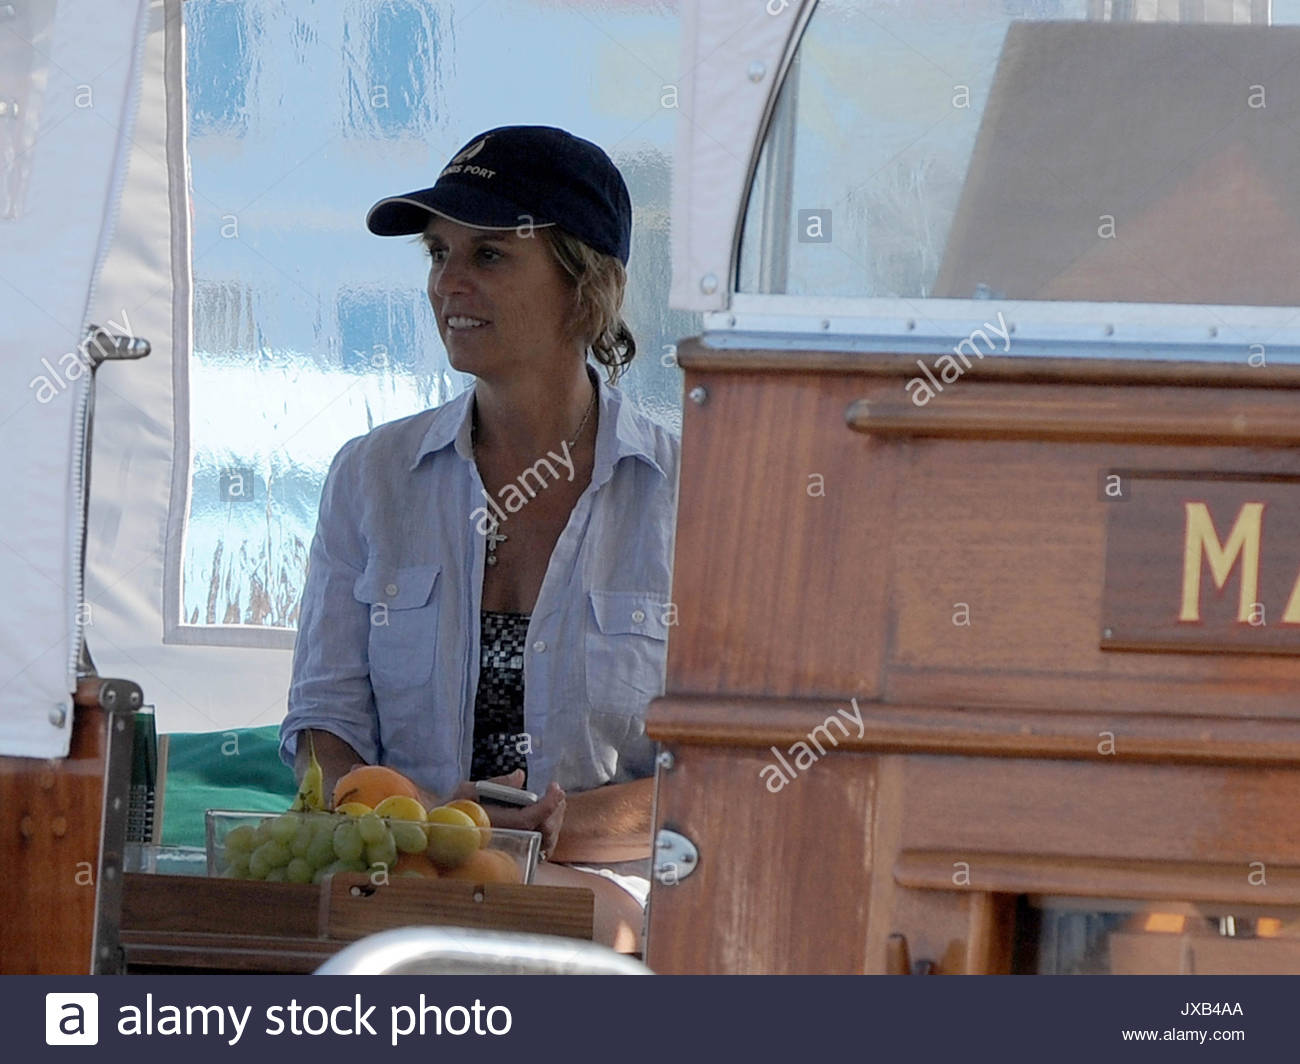 Kerry kennedy cuomo boat